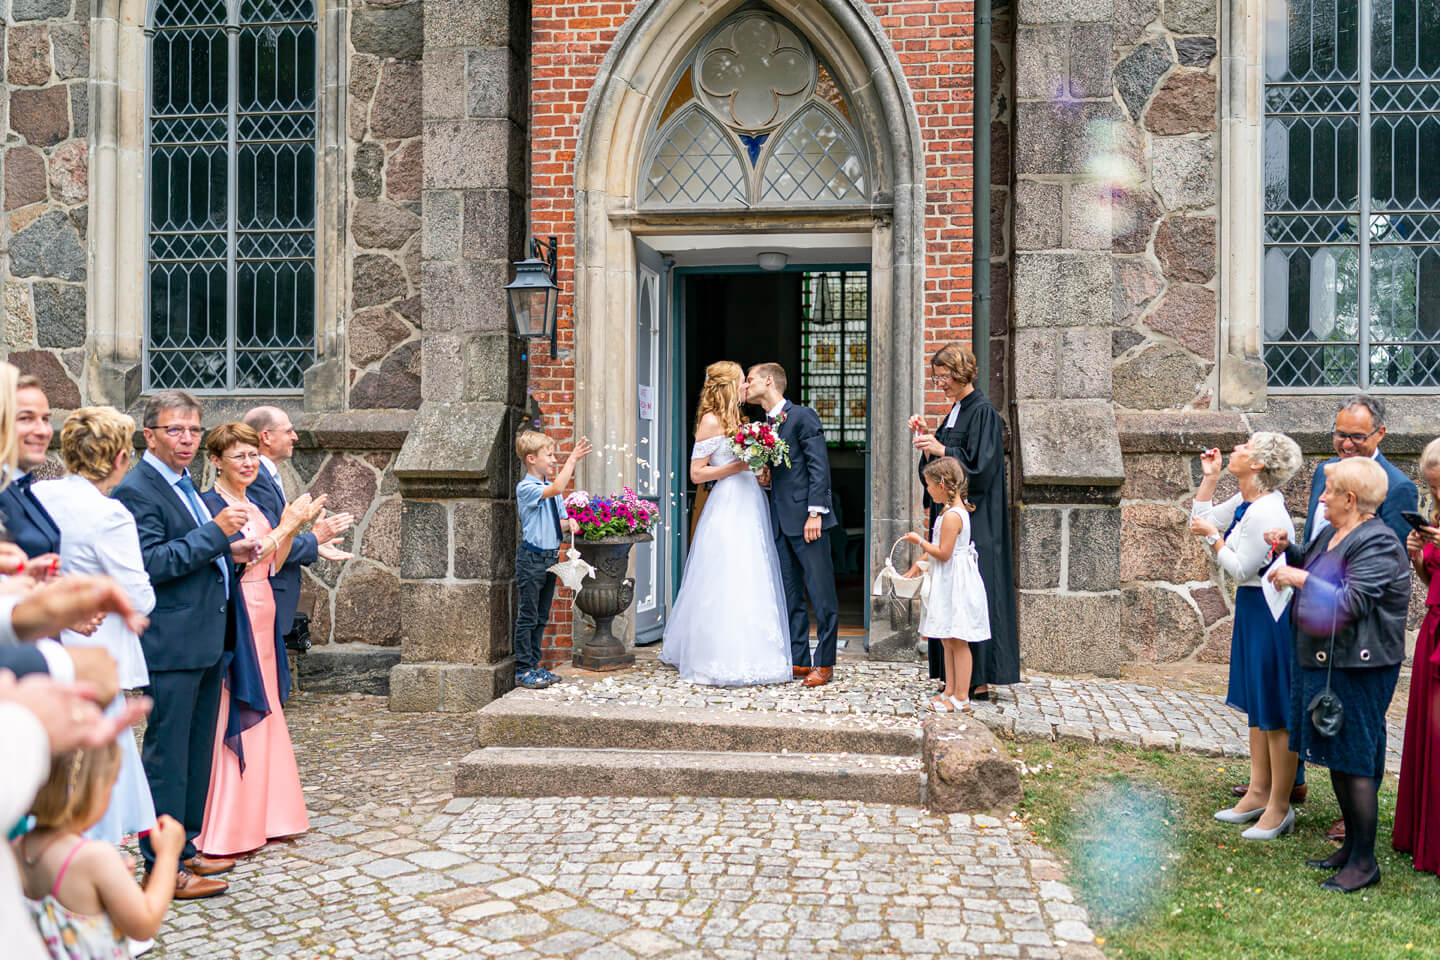 Frisch verheiratet in der Kirchentür. Das Brautpaar küsst sich.